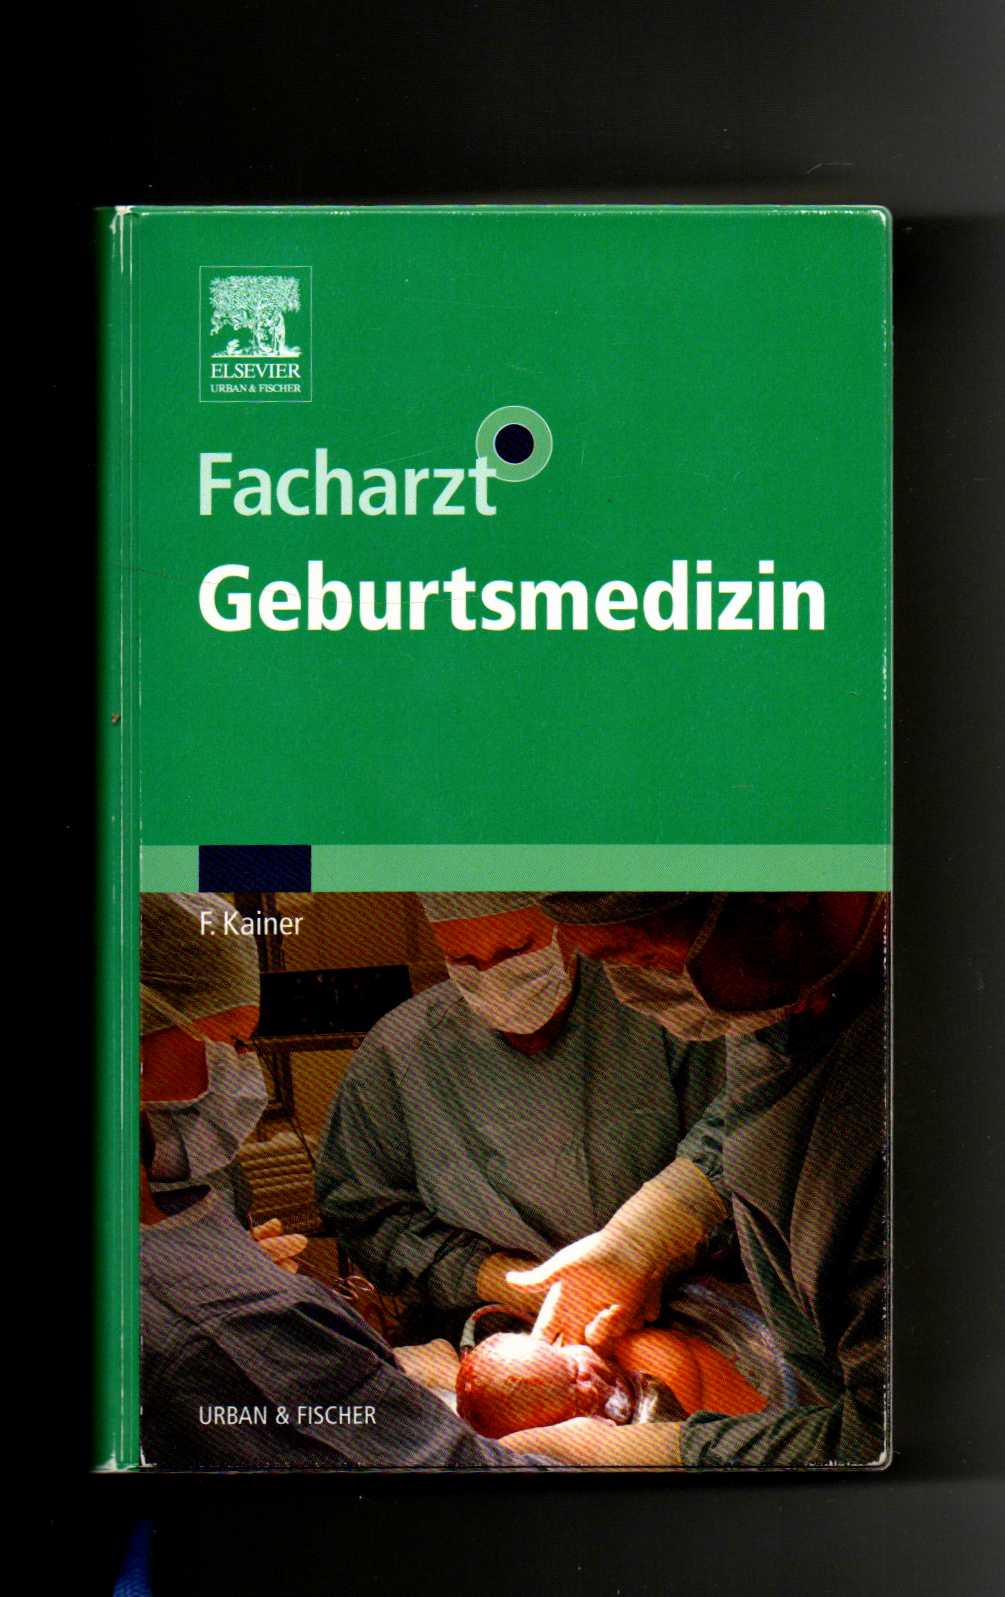 Franz Kainer, Facharzt Geburtsmedizin / ohne CD-Rom / Facharztwissen - Kainer, Franz (Mitwirkender) und Michael (Mitwirkender) Abou-Dakn